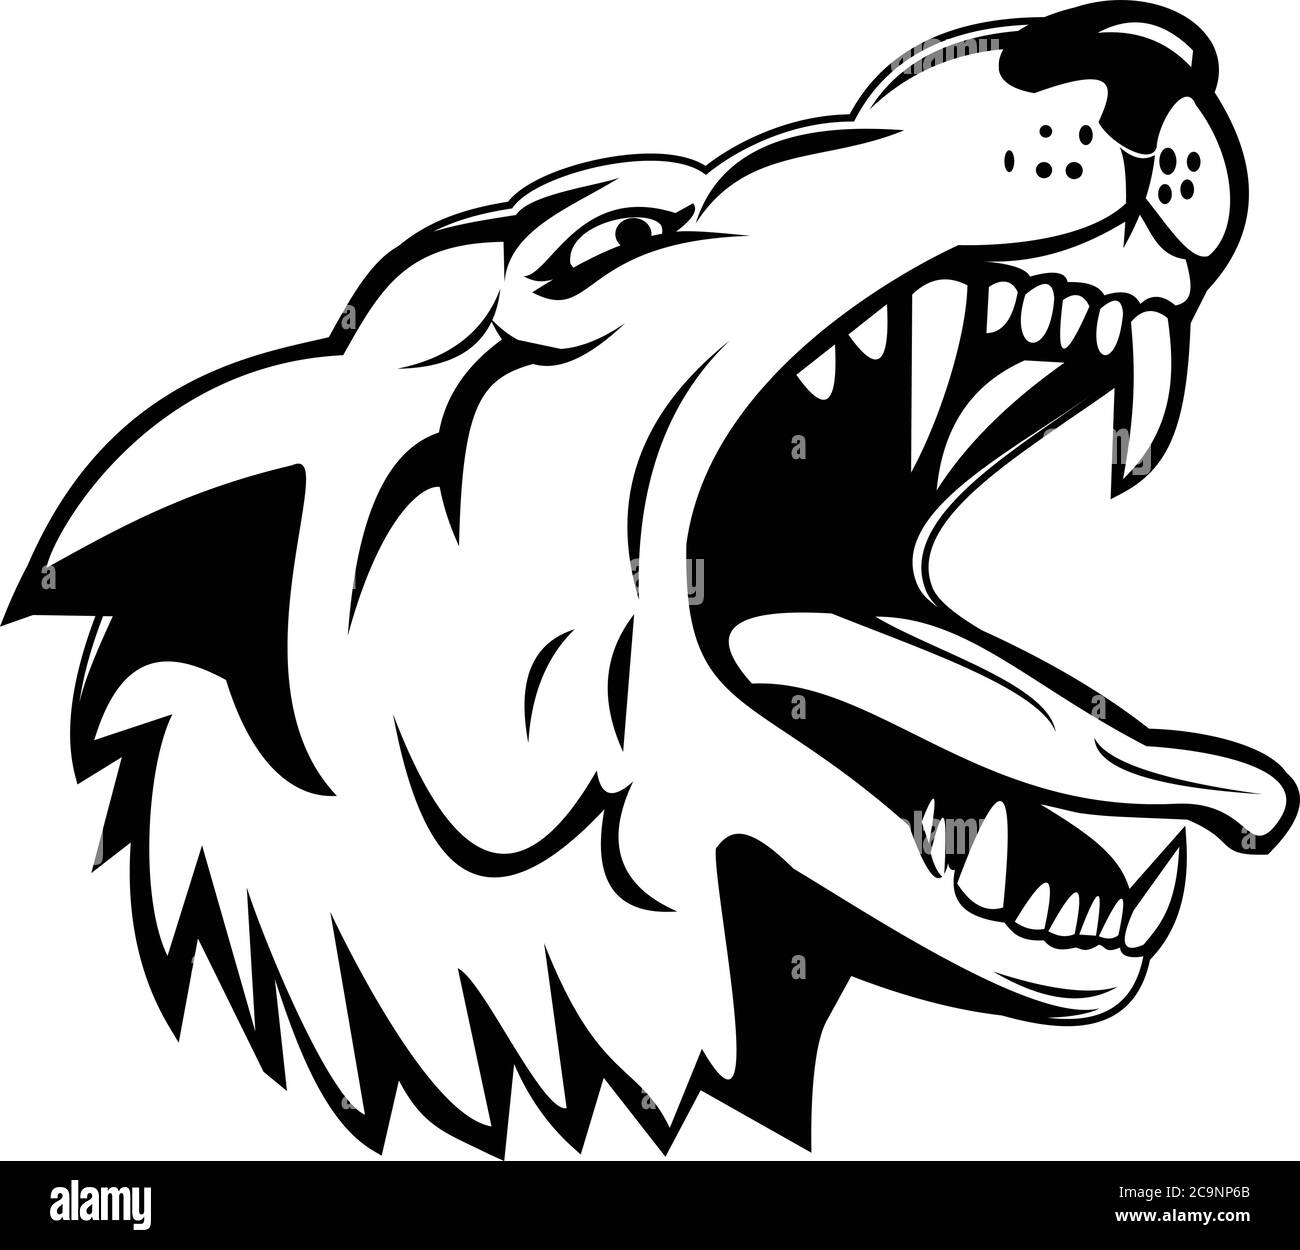 Sport mascotte illustrazione di testa di un lupo aggressivo e arrabbiato, lupo canis, lupo grigio o lupo grigio, un grande canino nativo del Nord America basso AN Illustrazione Vettoriale